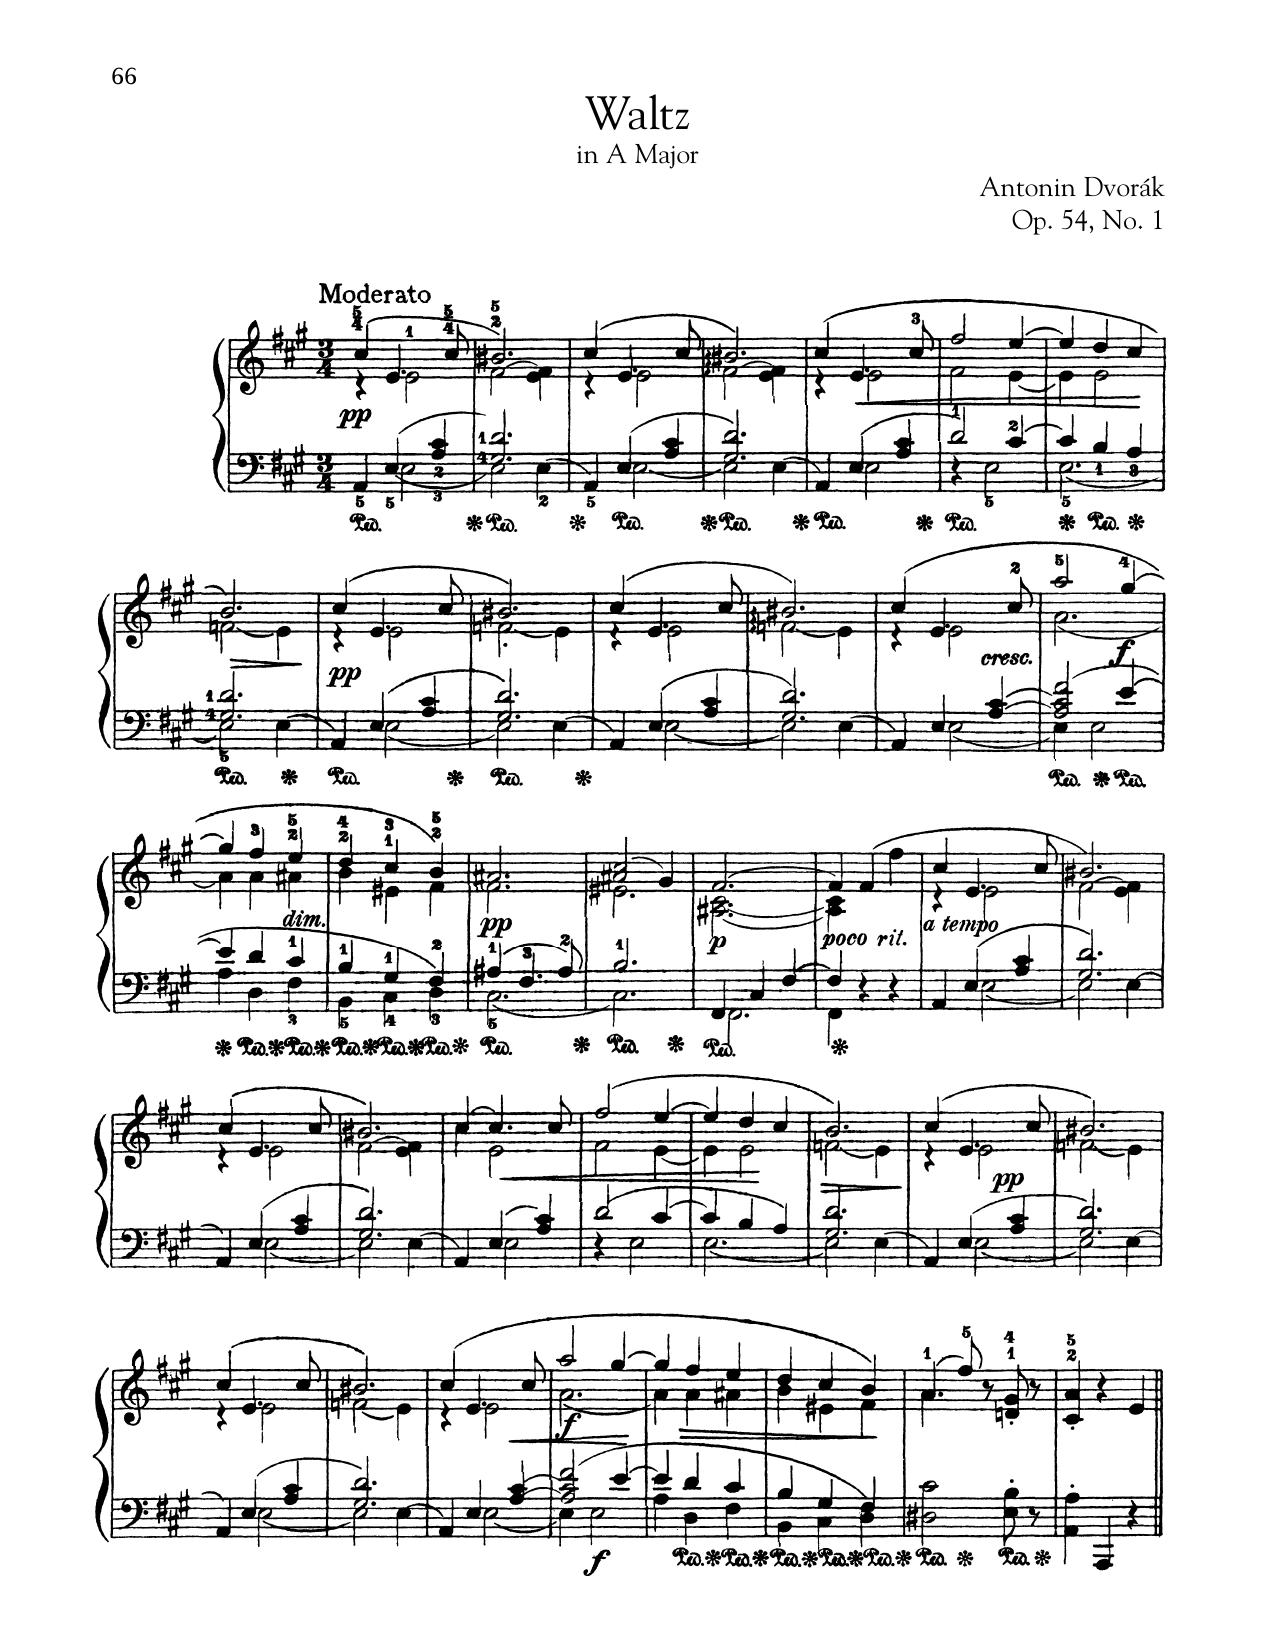 Download Antonin Dvorak Waltz In A Major, Op. 54, No. 1 Sheet Music